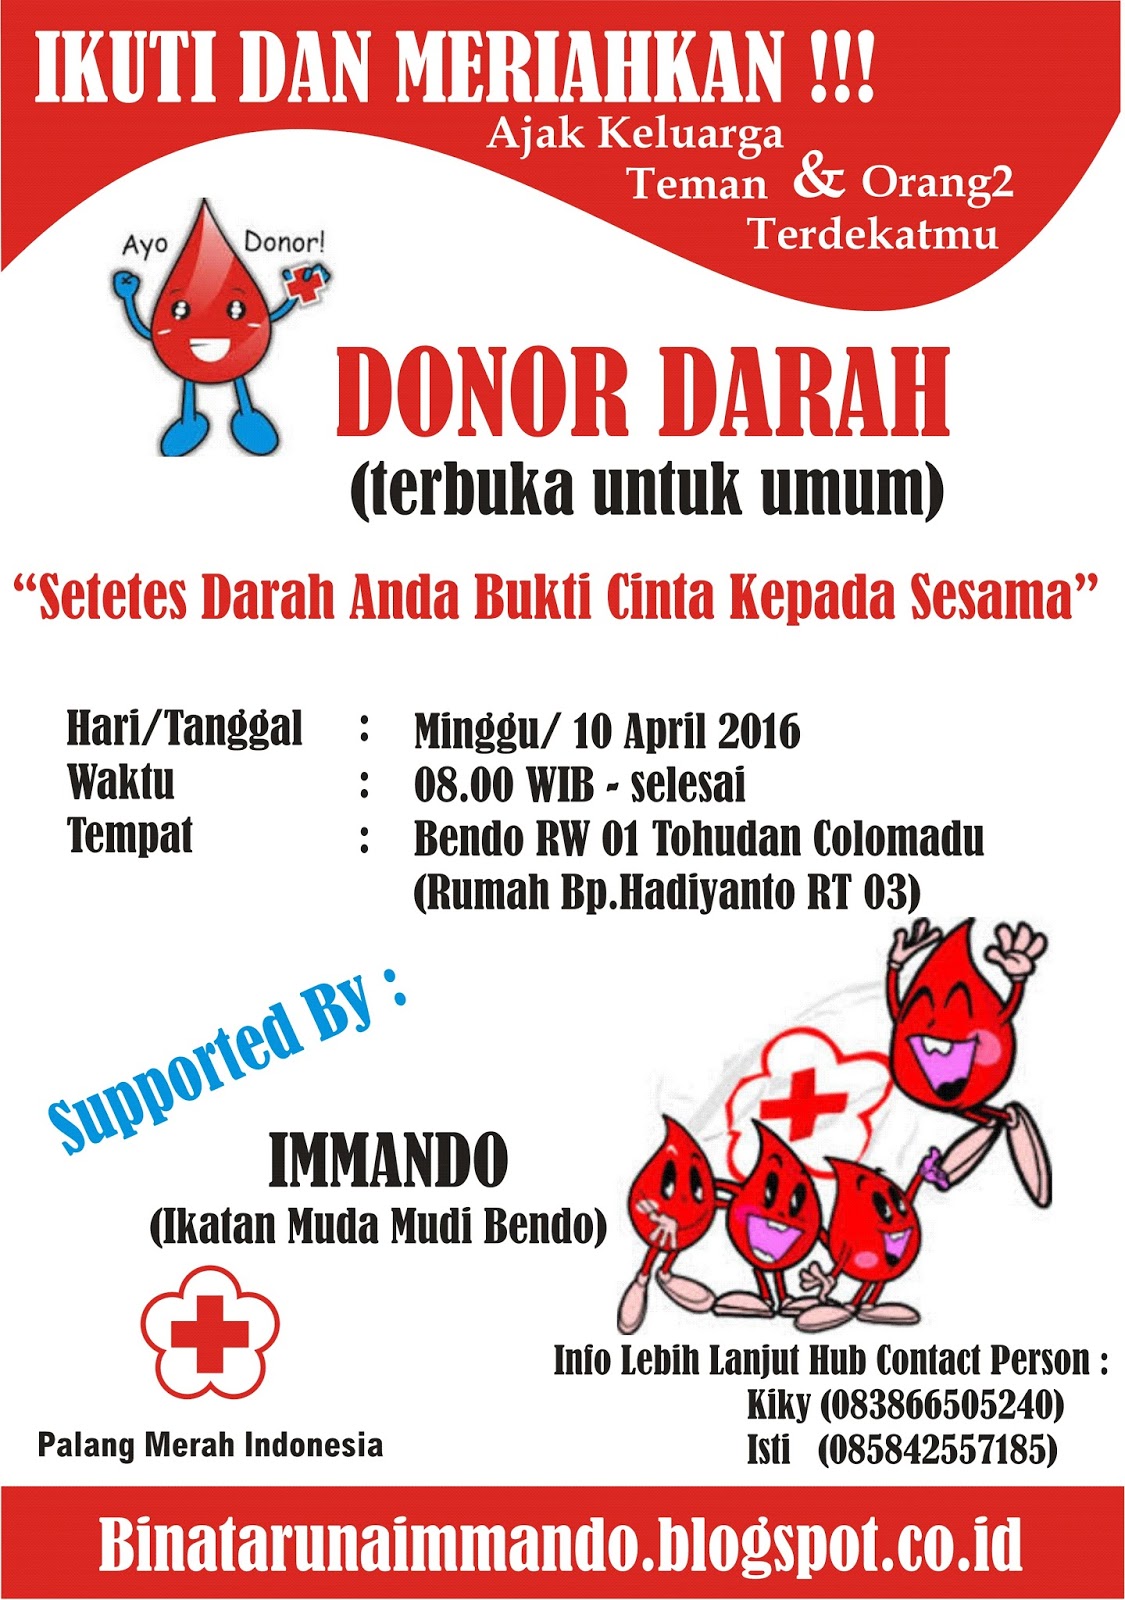 10 Desain  Spanduk  Donor  Darah  Cdr 